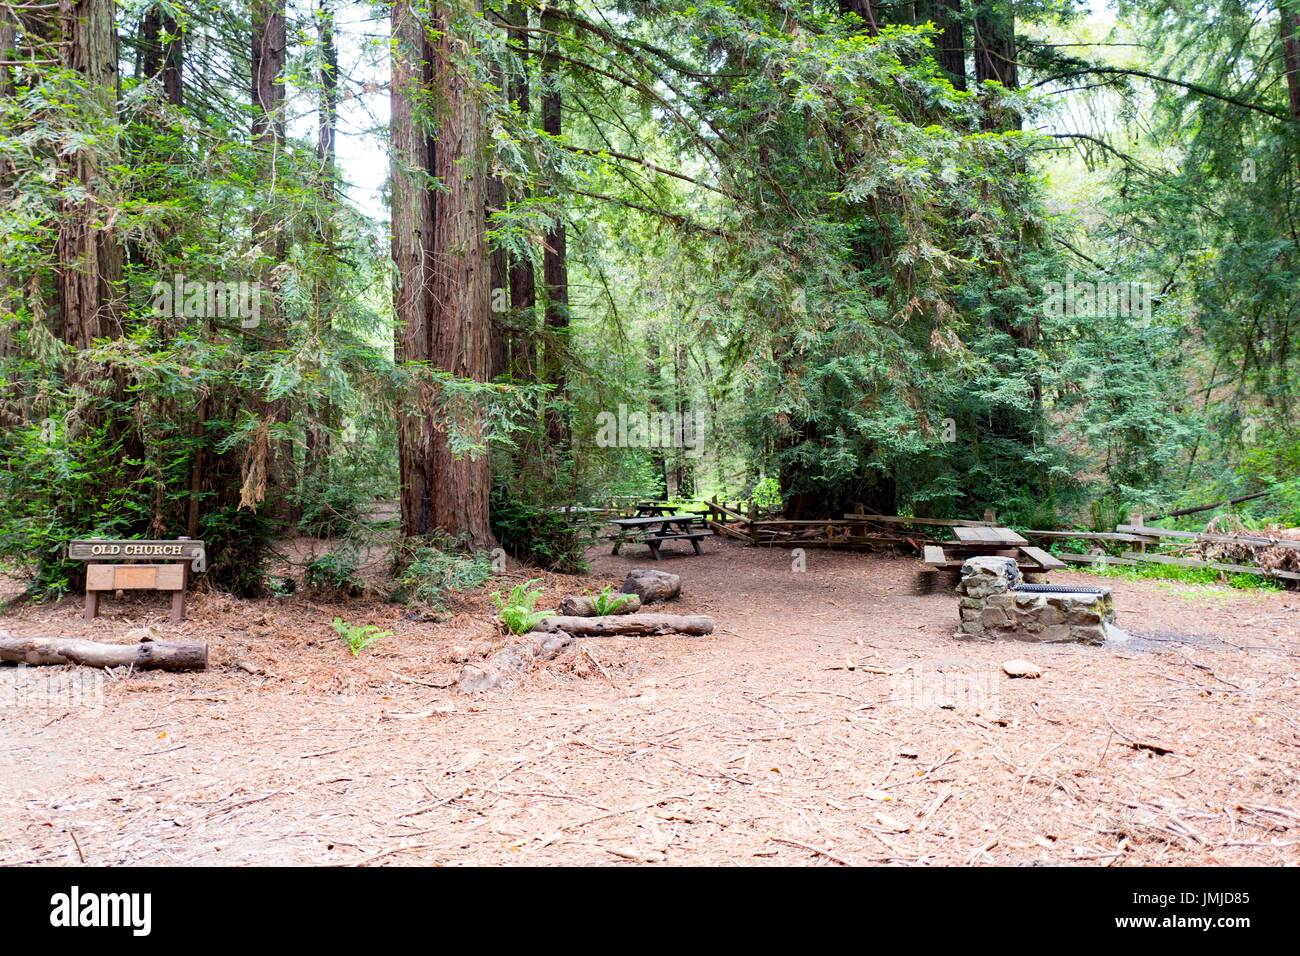 Picknick-Bereich unter Reife Coast Redwood-Bäume in der alten Kirche Hain in Redwoods Regional Park, Oakland, Kalifornien, 26. Mai 2017. Stockfoto